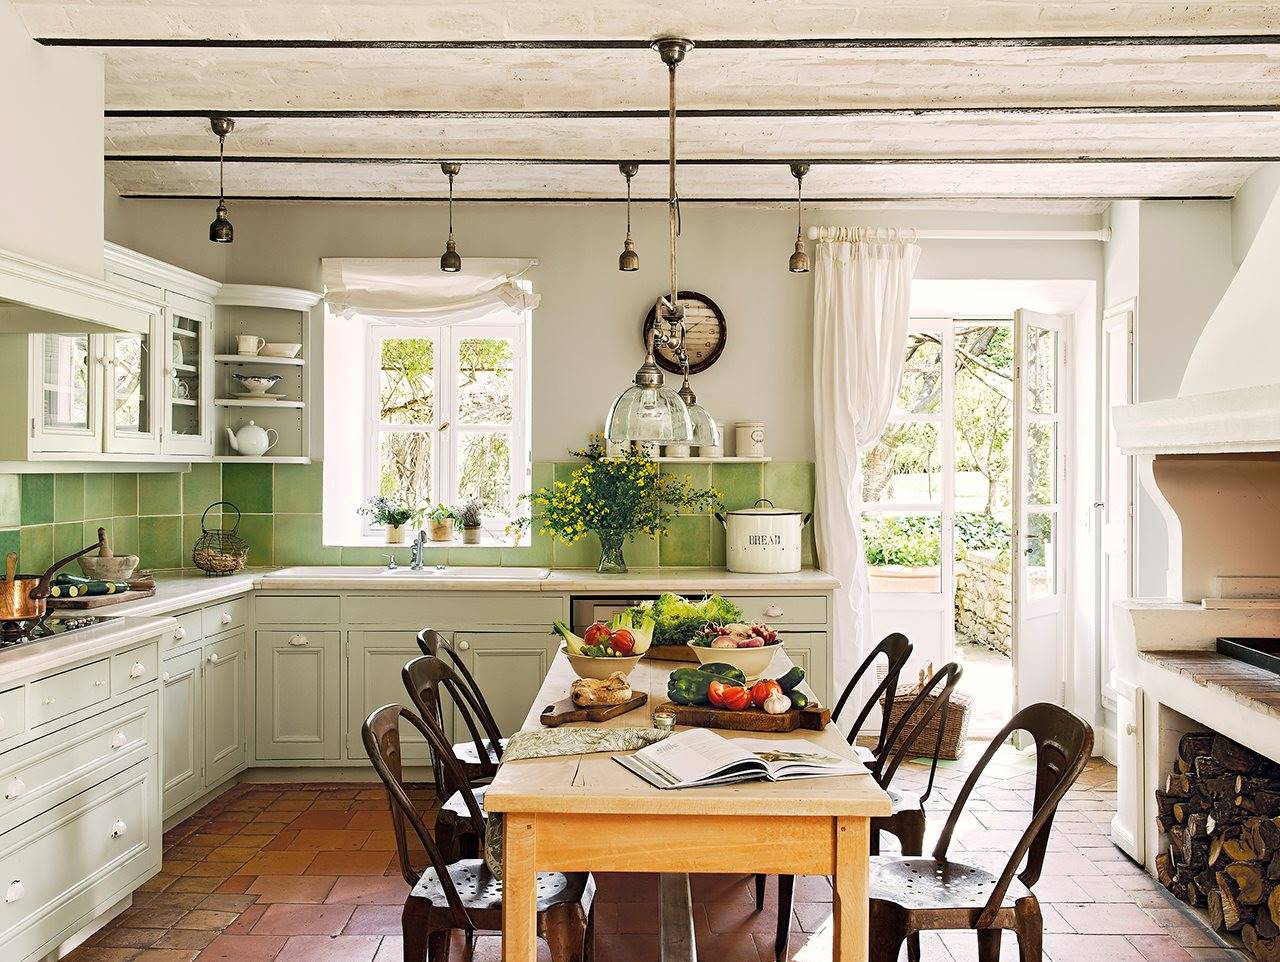 cocina con cocina de lena y azulejos verdes 1280x962